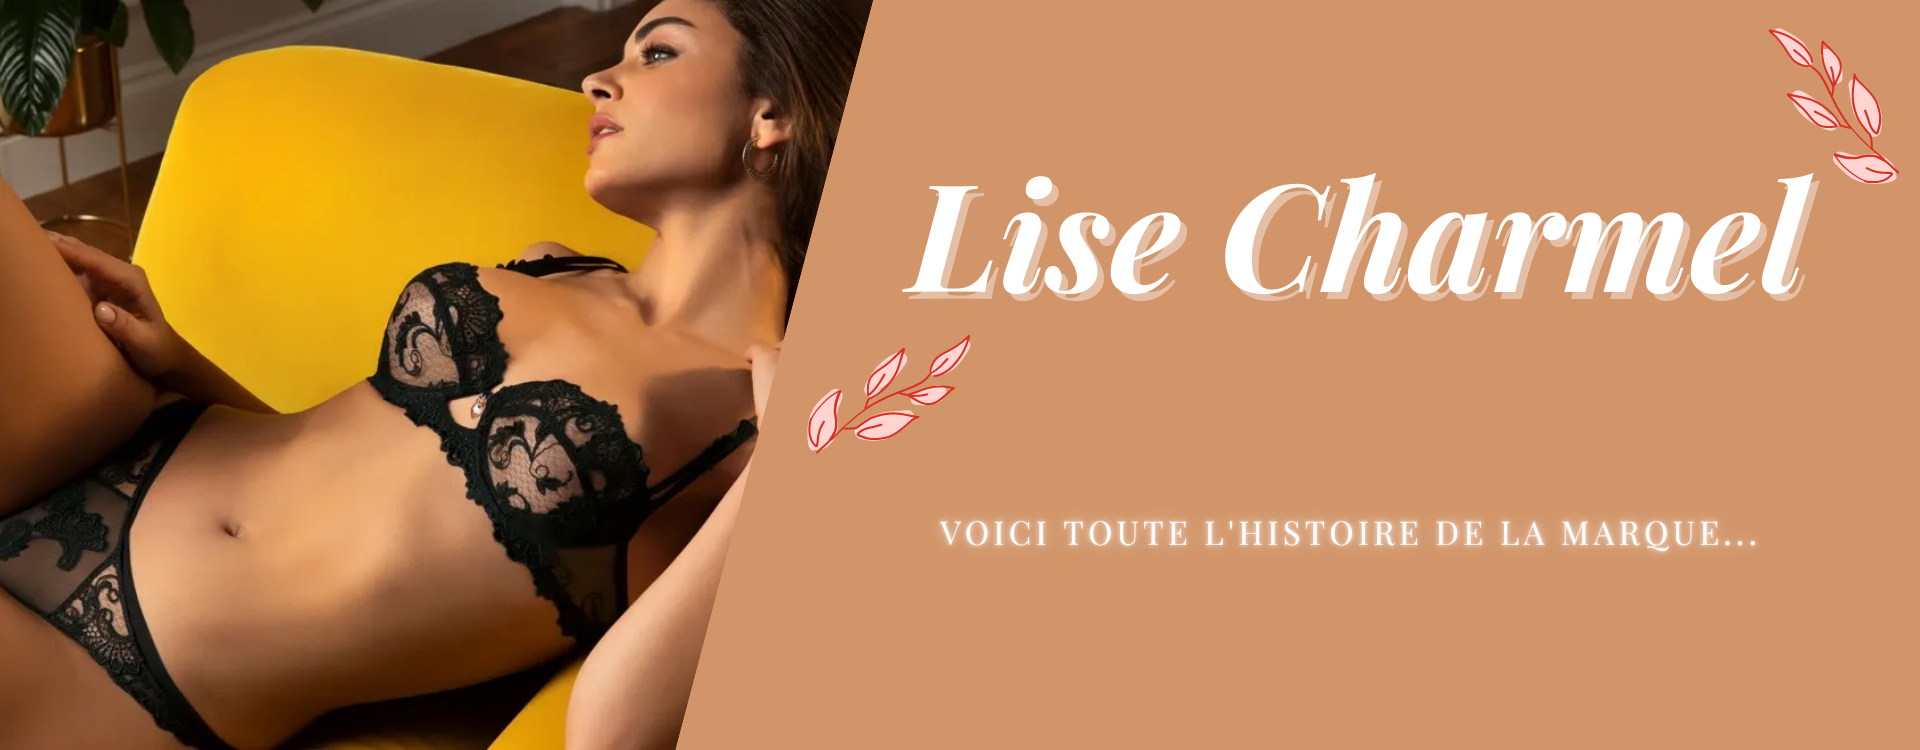 L'histoire de la marque Lise Charmel